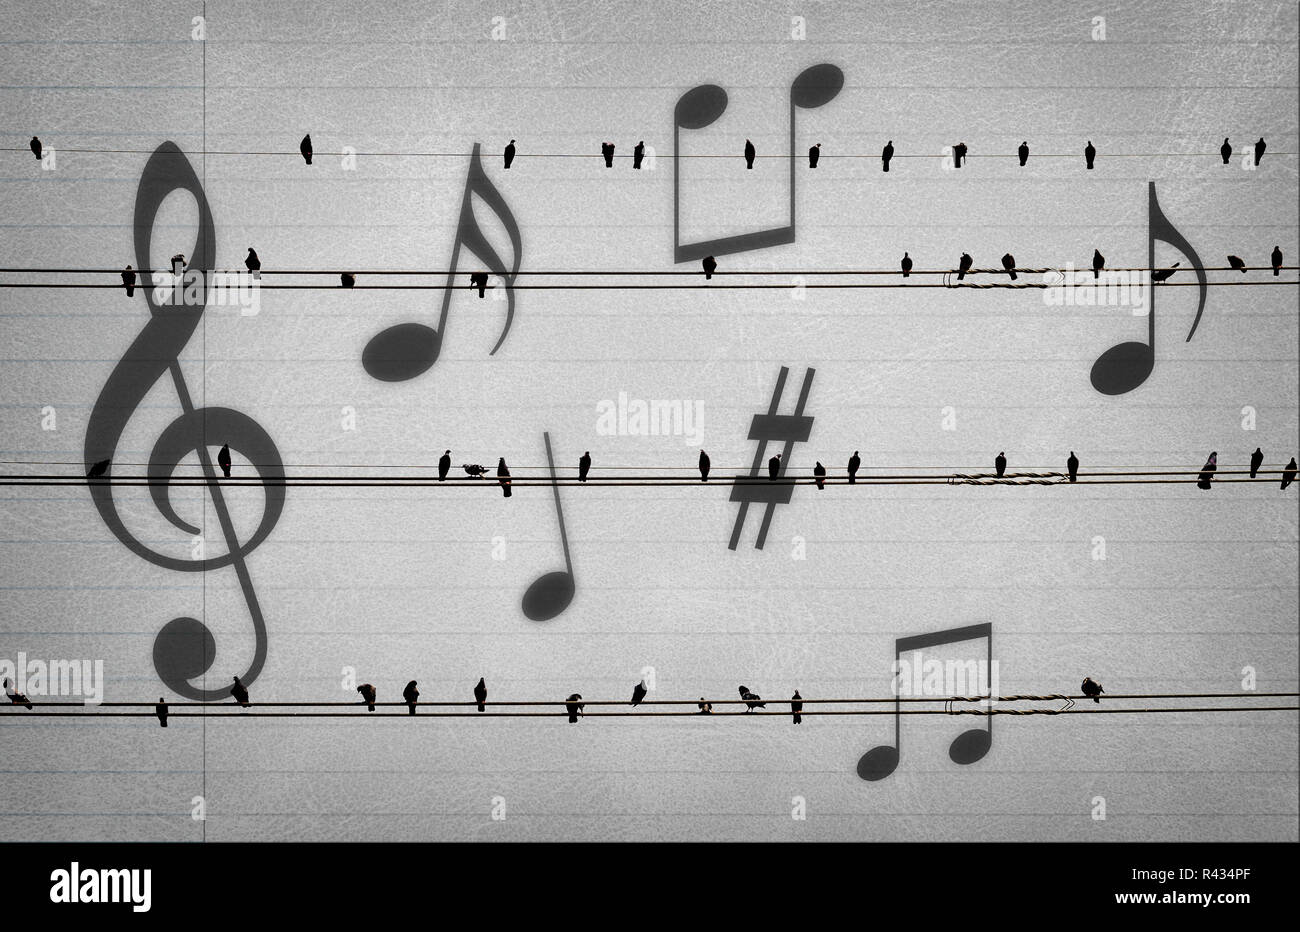 Les pigeons sur les fils électriques avec la musique noteson sur vieux papier ressemblent à des notes de musique,concept musical Banque D'Images